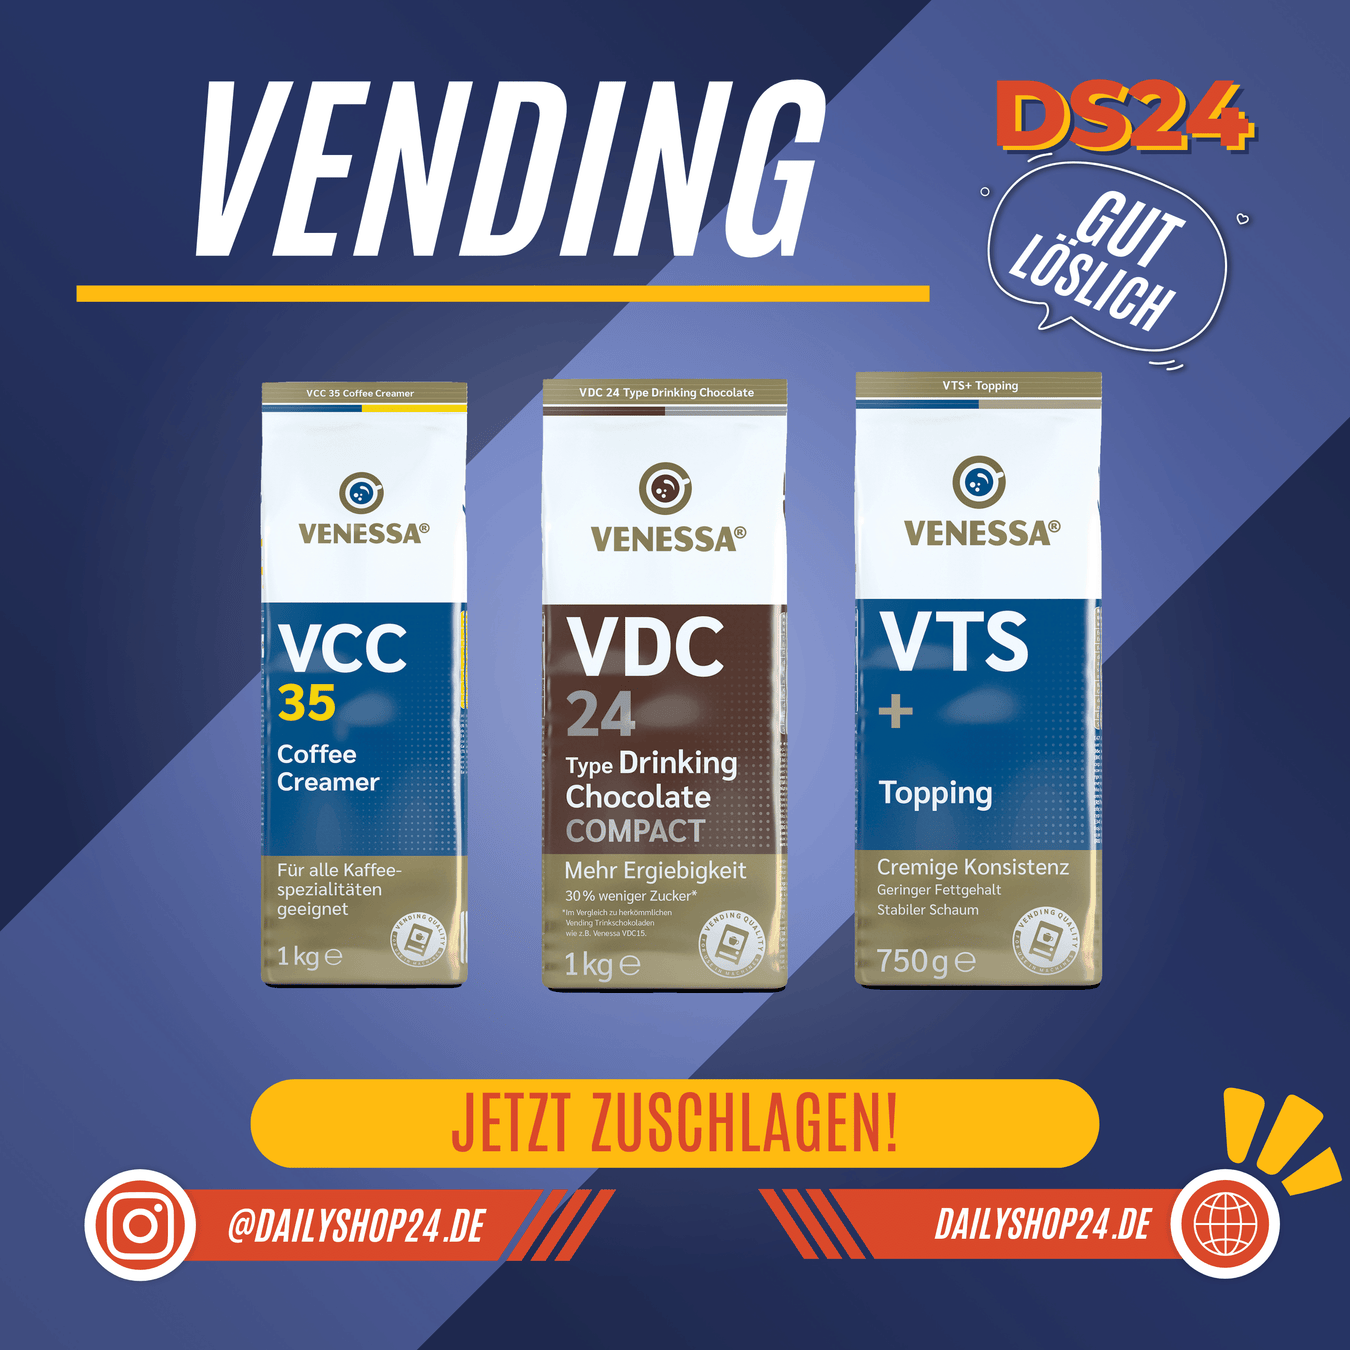 dailyshop24 vending kategoriebild mit drei venessa produkten vcc35 coffee creamer vdc24 drinking chocolate und venessa vts+